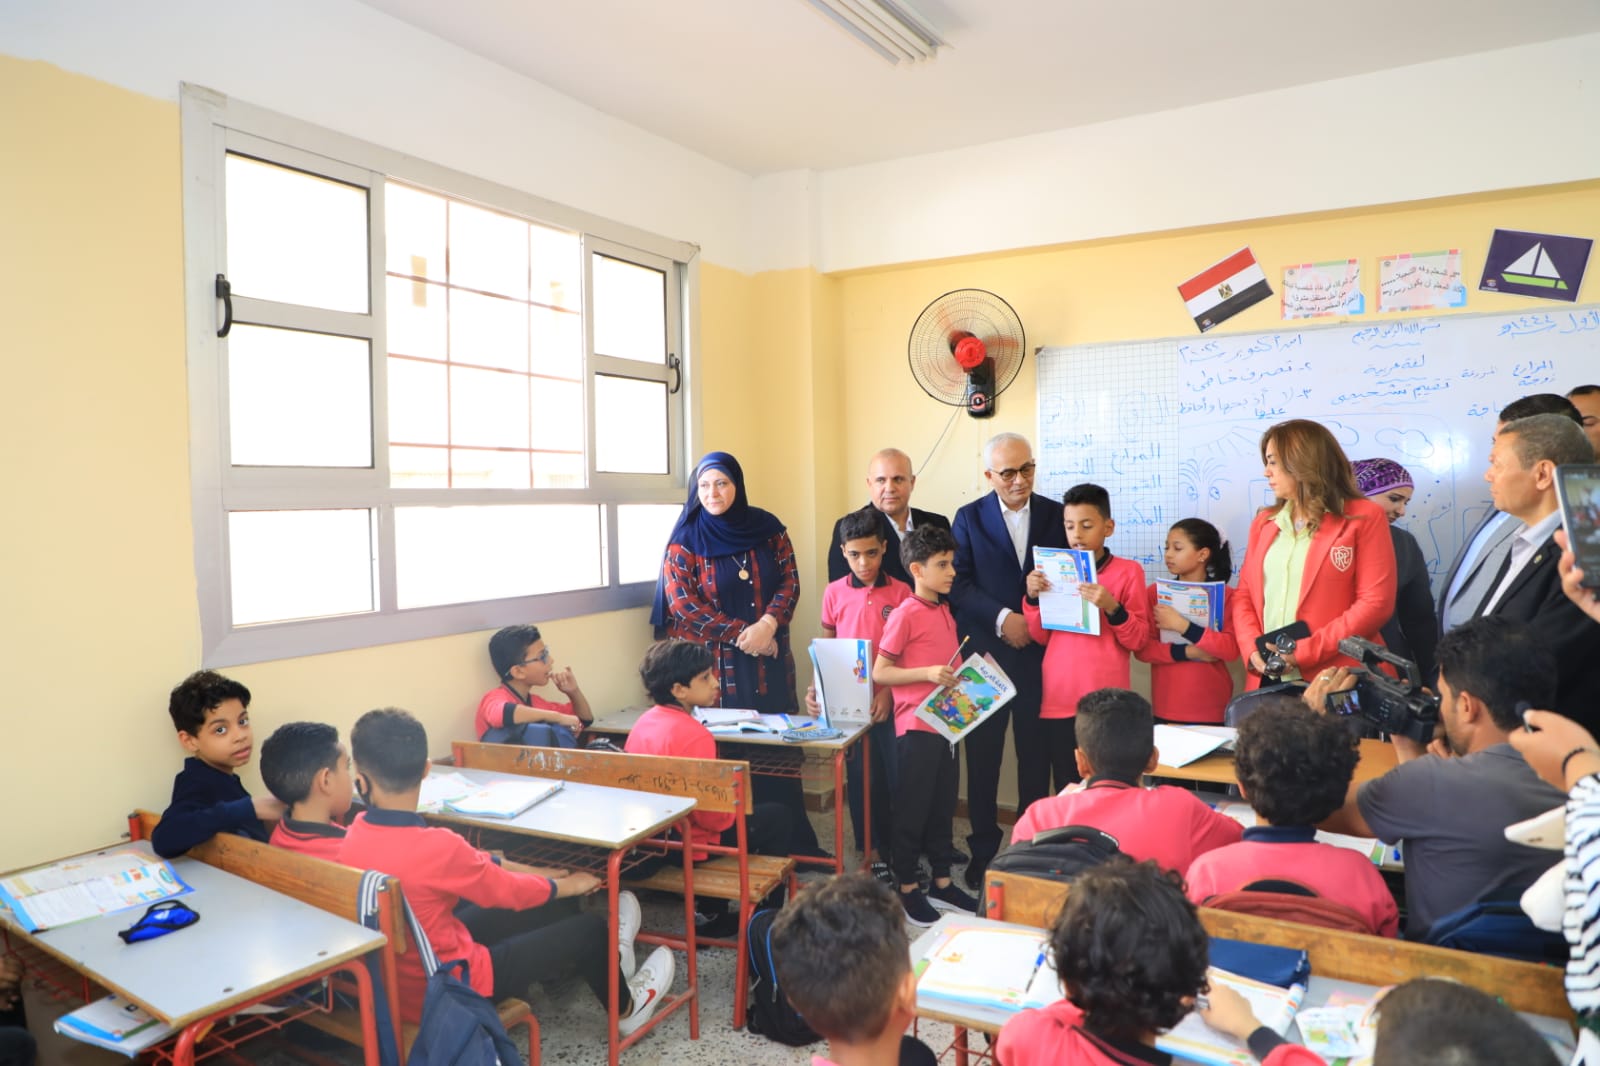 وزير التعليم يوجه طلاب مدرسة  أكتوبر في دمياط إلى صيغة الأعداد الصحيحة| فيديو وصور 